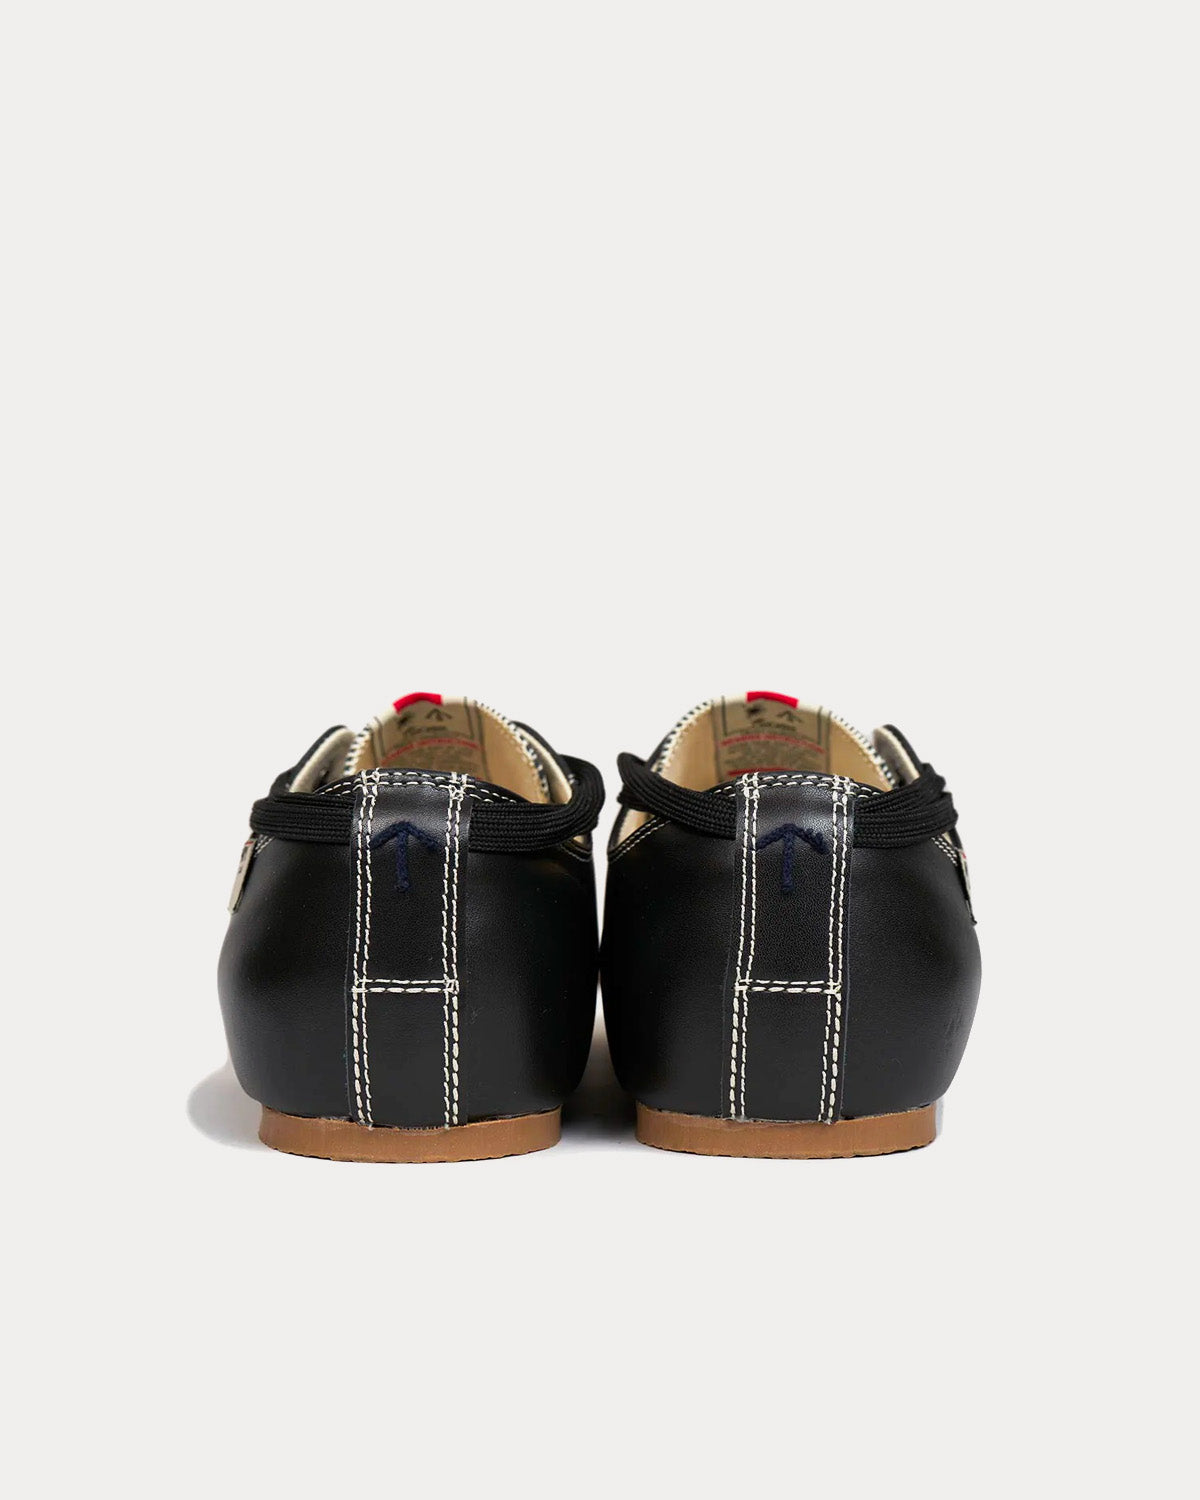 Mihara Yasuhiro X Nigel Cabourn - Bowling Shoe Leather Black Low Top Sneakers